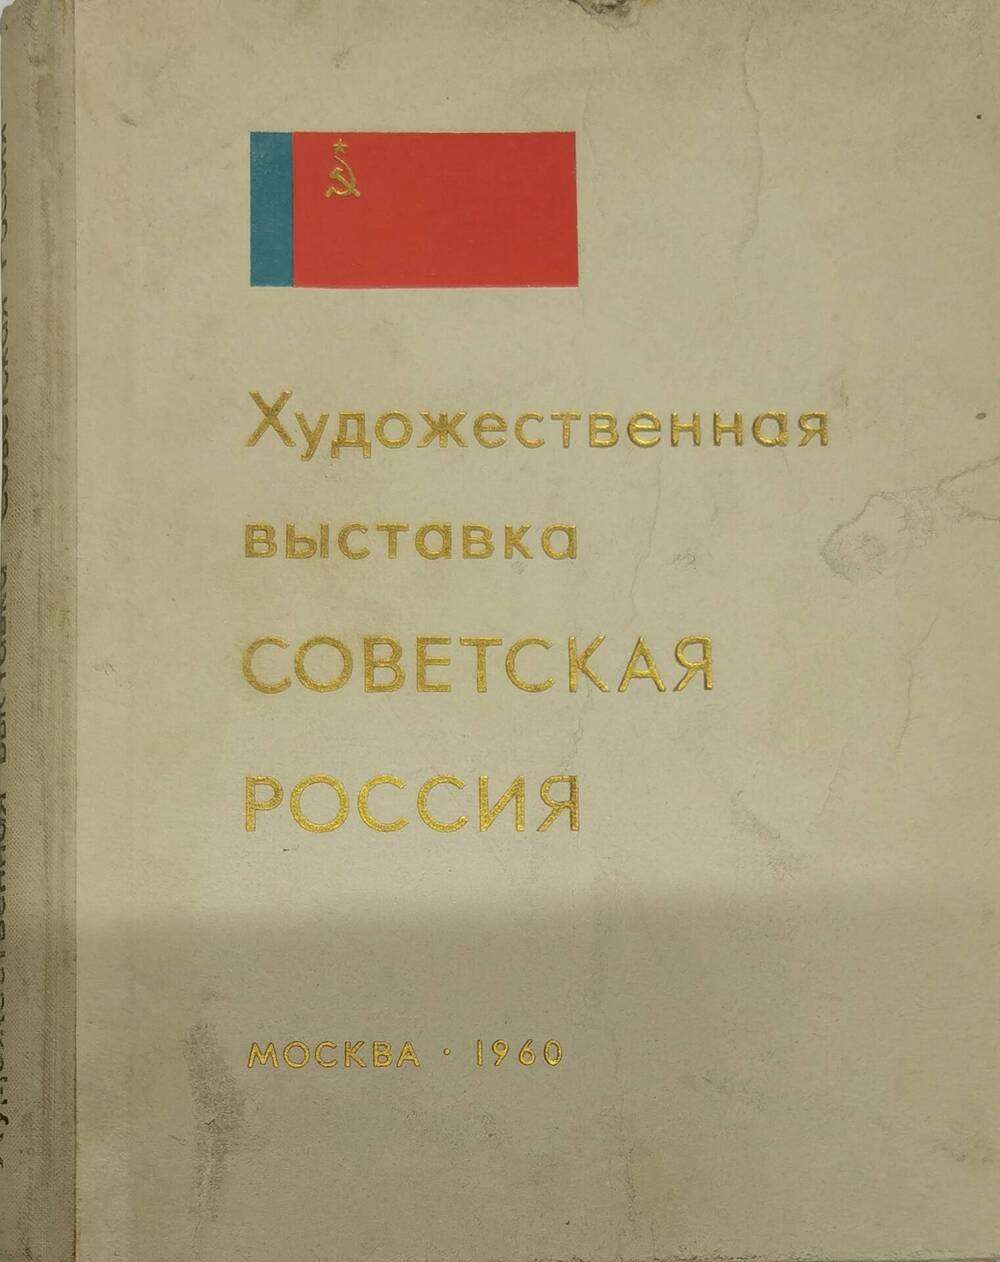 Каталог выставки Советская Россия. 1960г.